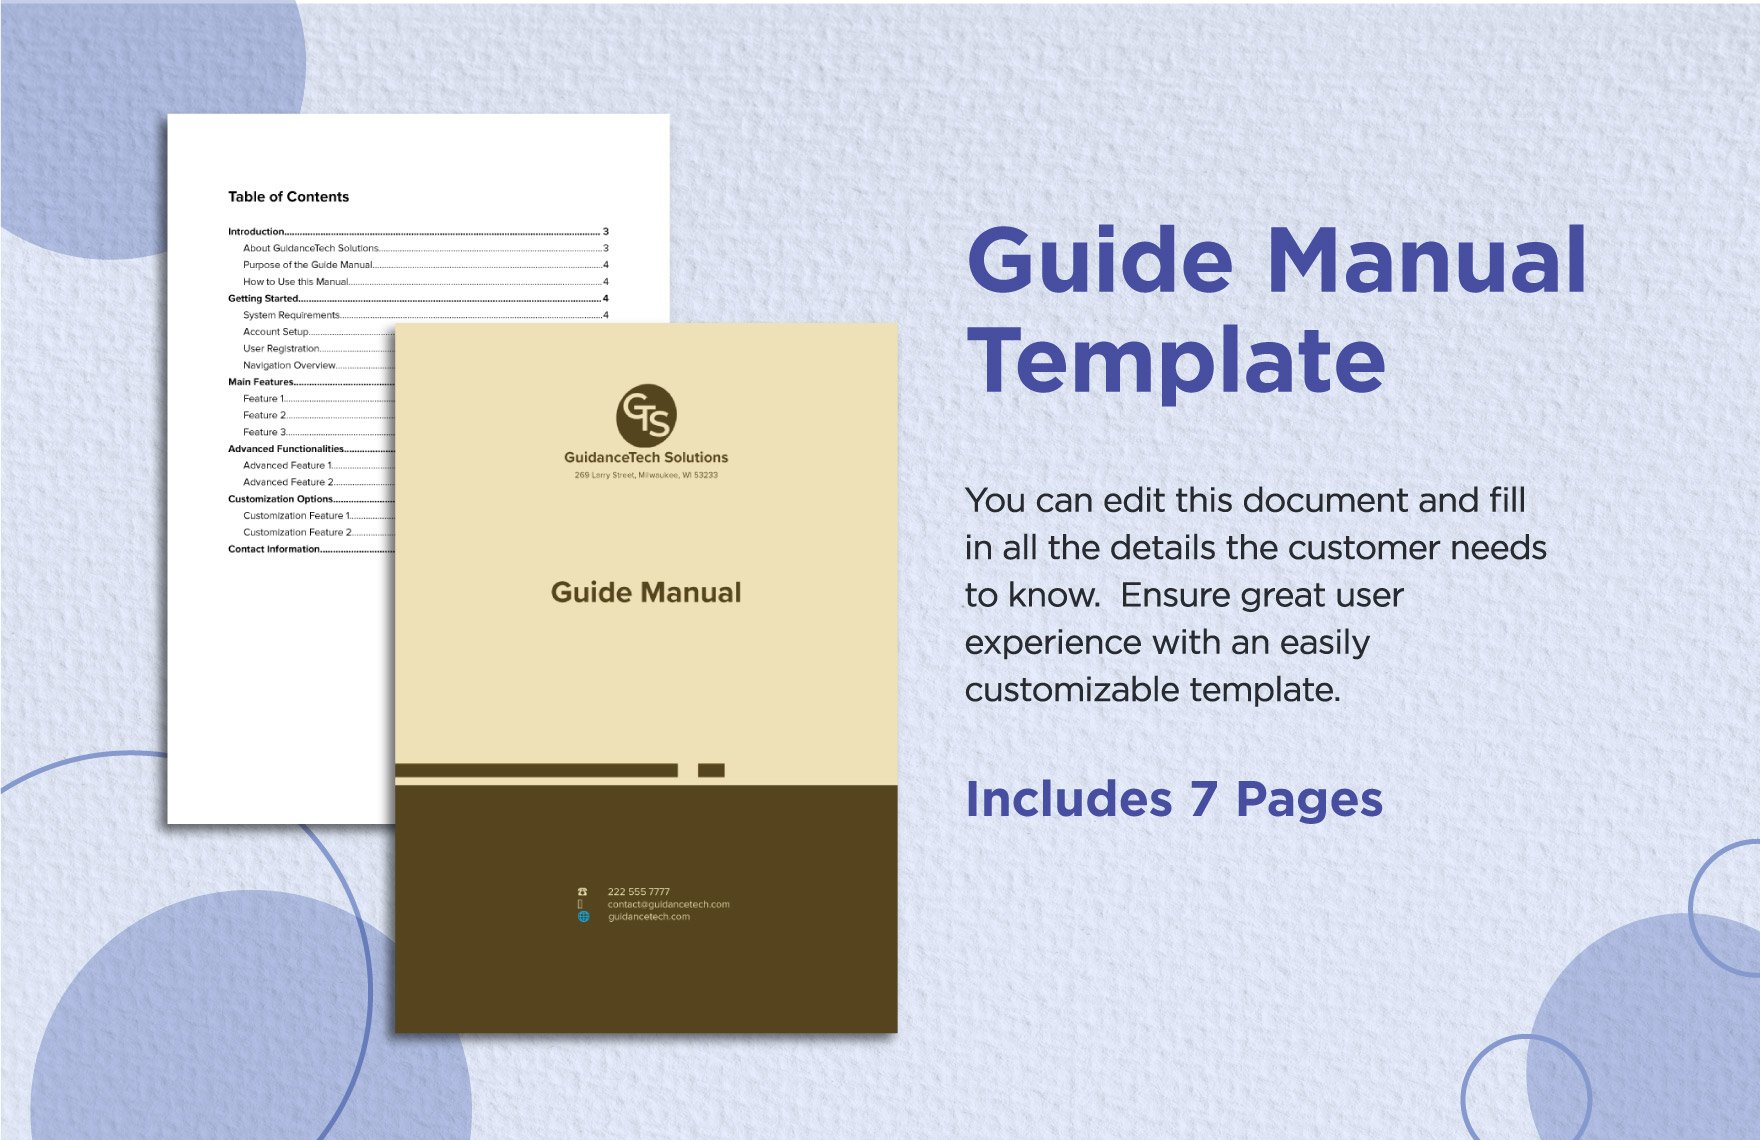 Guide Manual Template